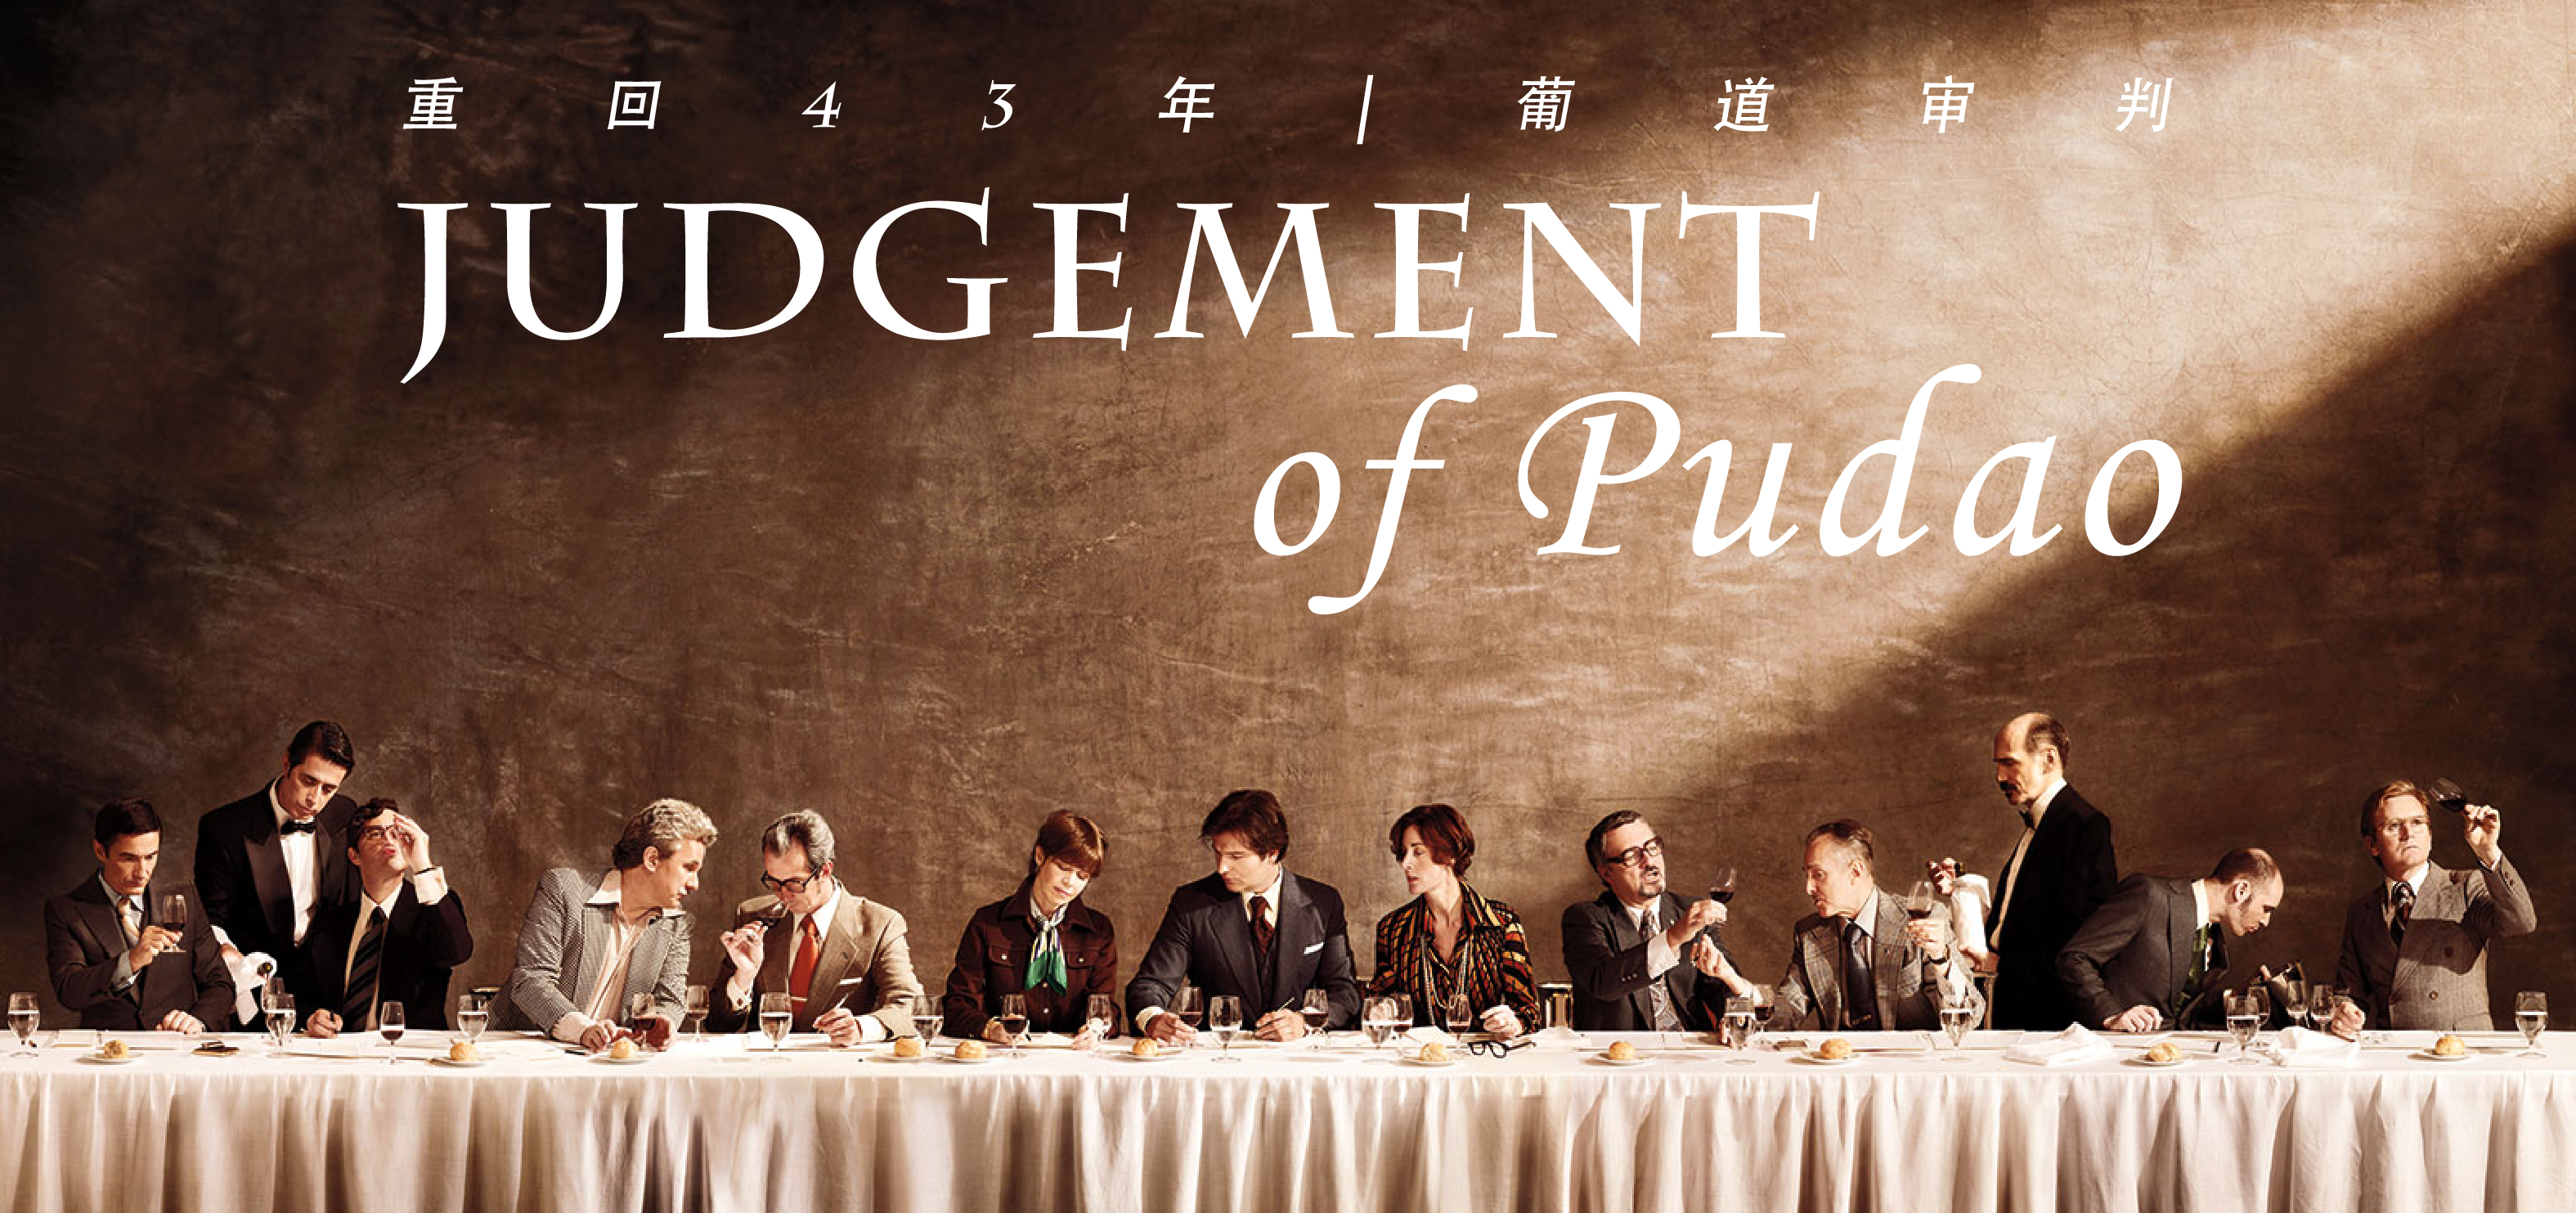 【品鉴会门票】葡道审判品鉴会 【Ticket】Judgement of Pudao